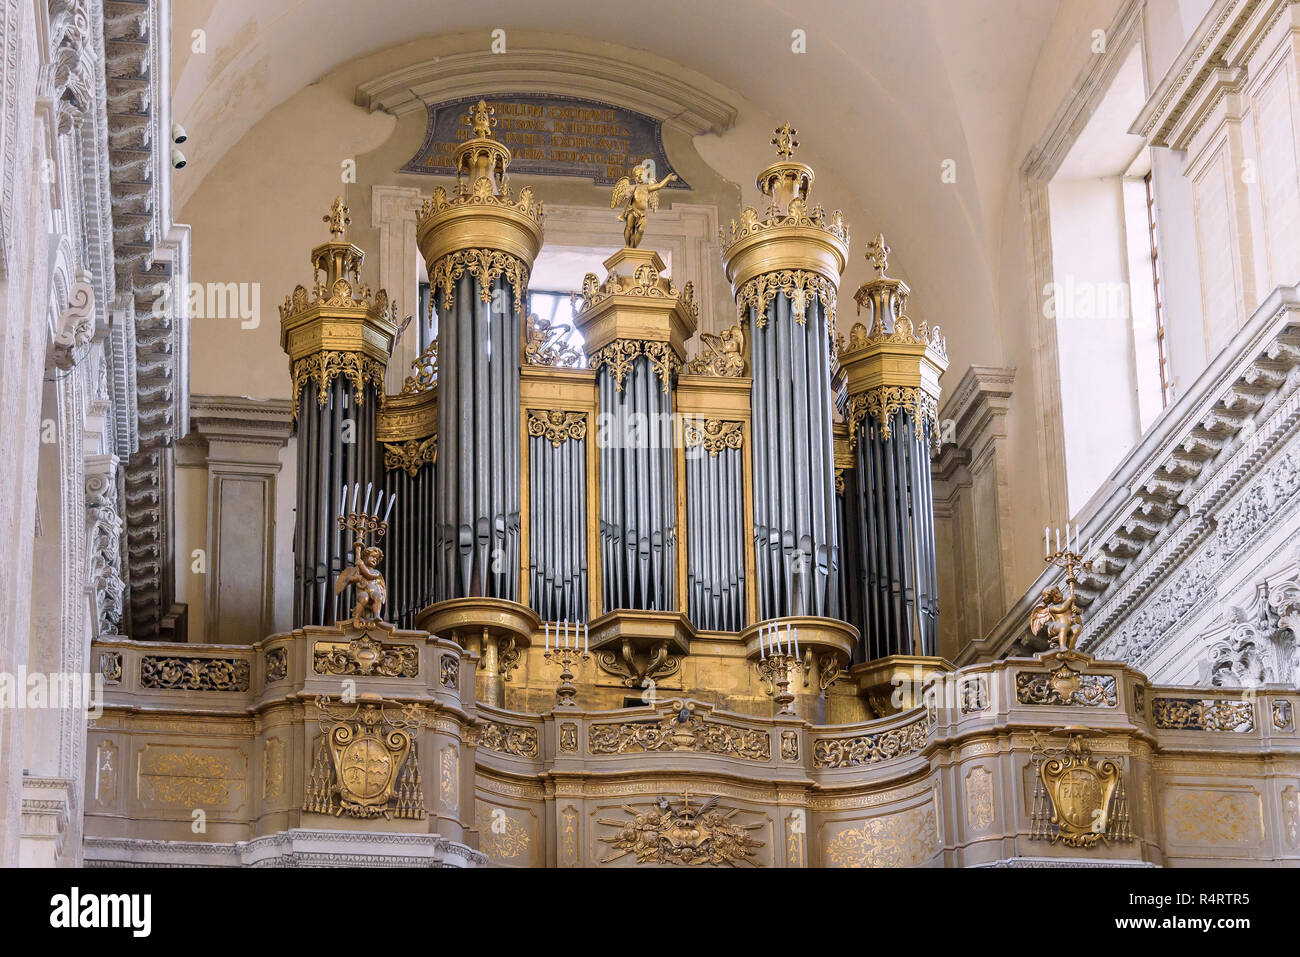 Catane, Sicile, Italie - 23 août 2017 : l'intérieur de l'orgue de l'église cathédrale de Saint Agathe à Catane Banque D'Images